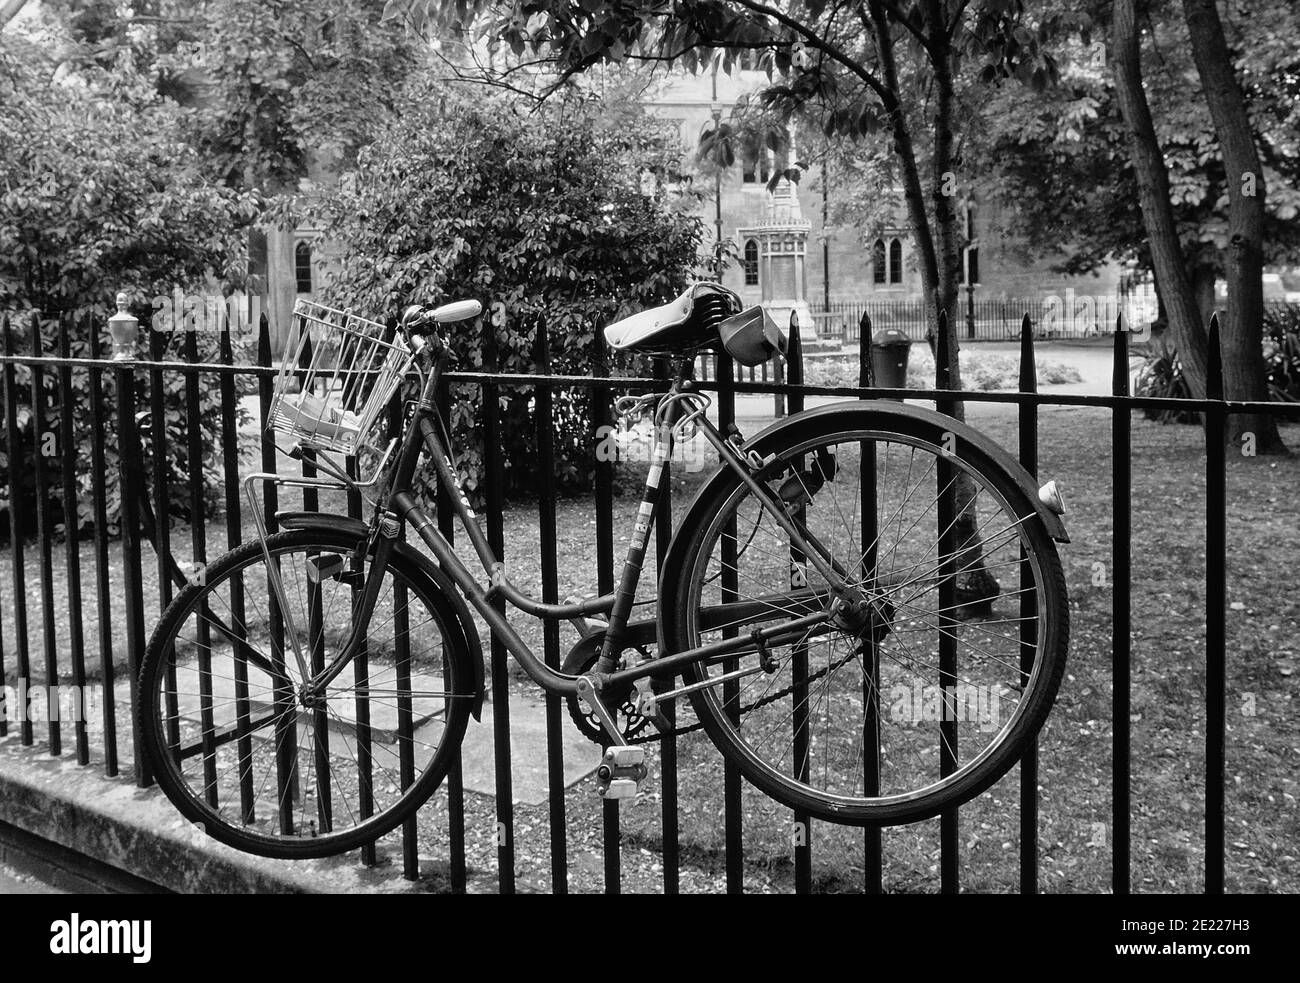 Locked bicycle on railings, Cambridge, Cambridgeshire, England, UK Stock Photo